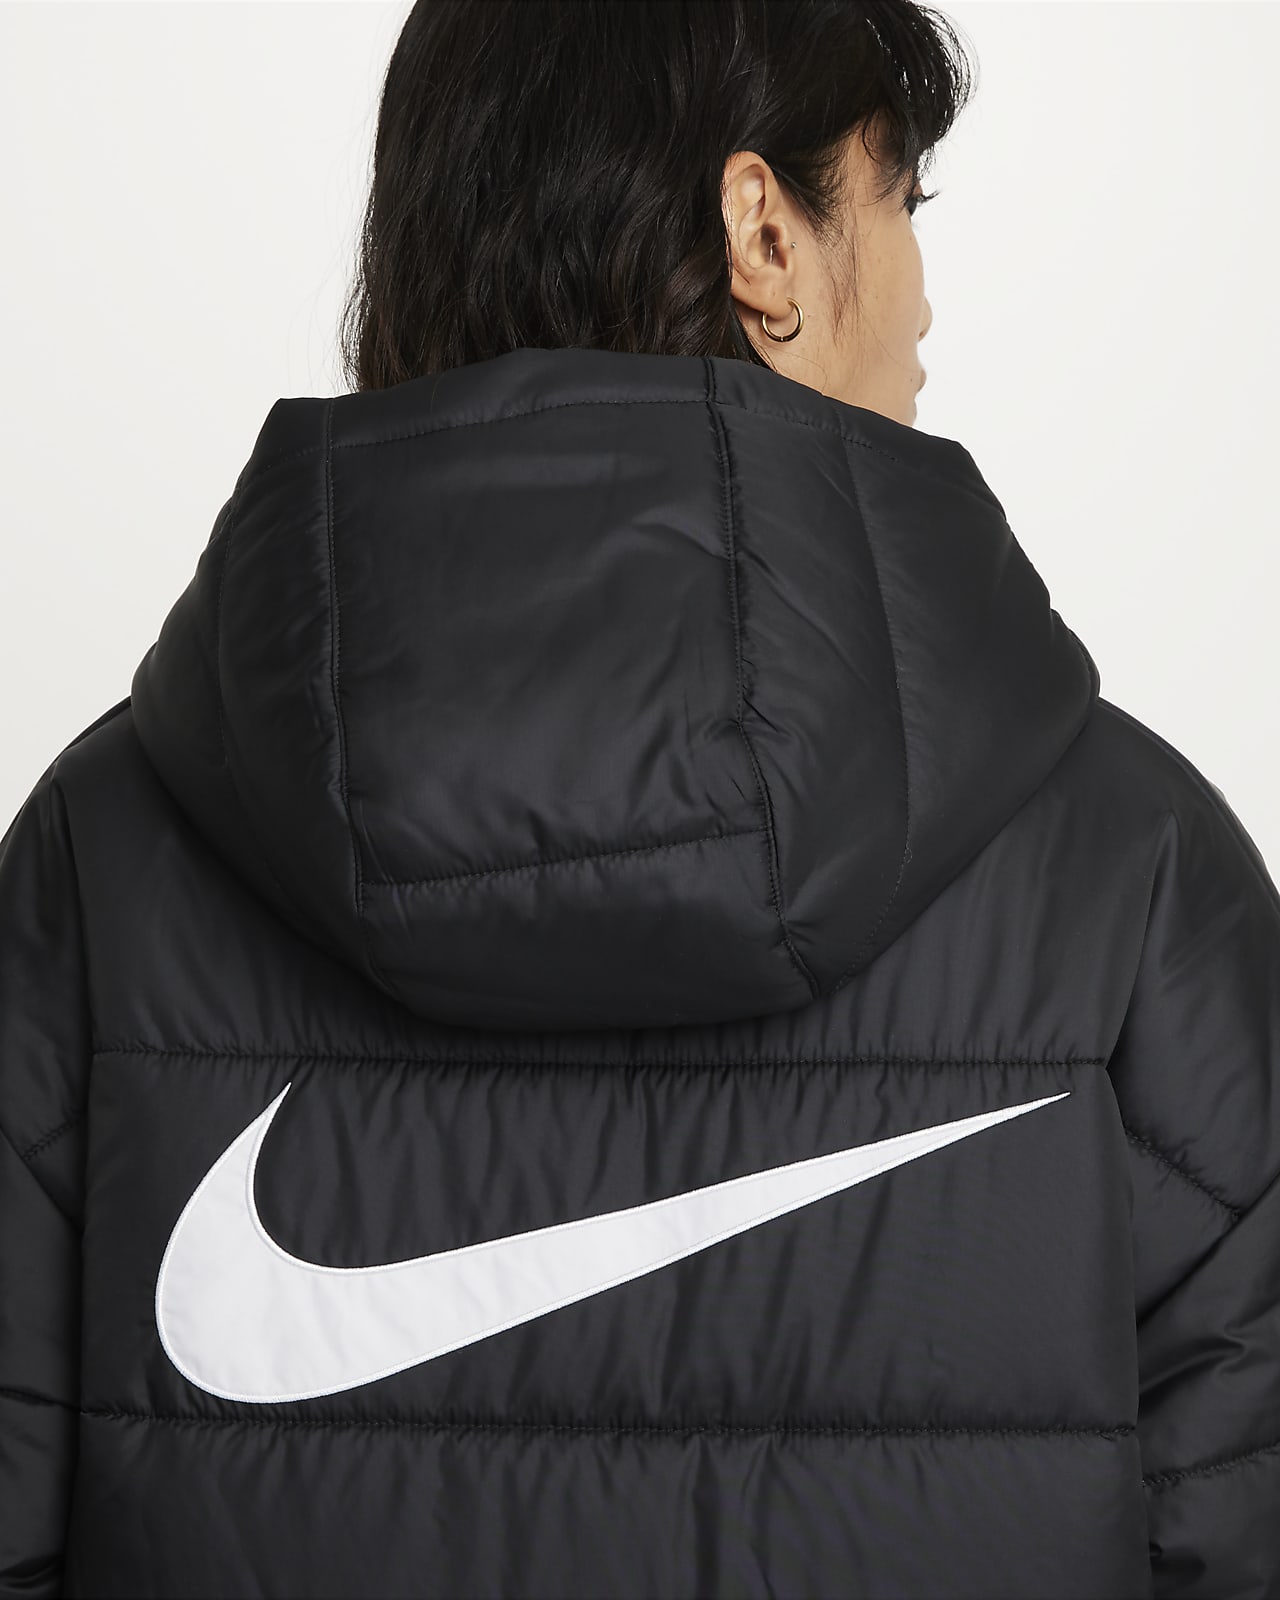 Nike Sportswear Therma-FIT Repel Women's Hooded Parka.